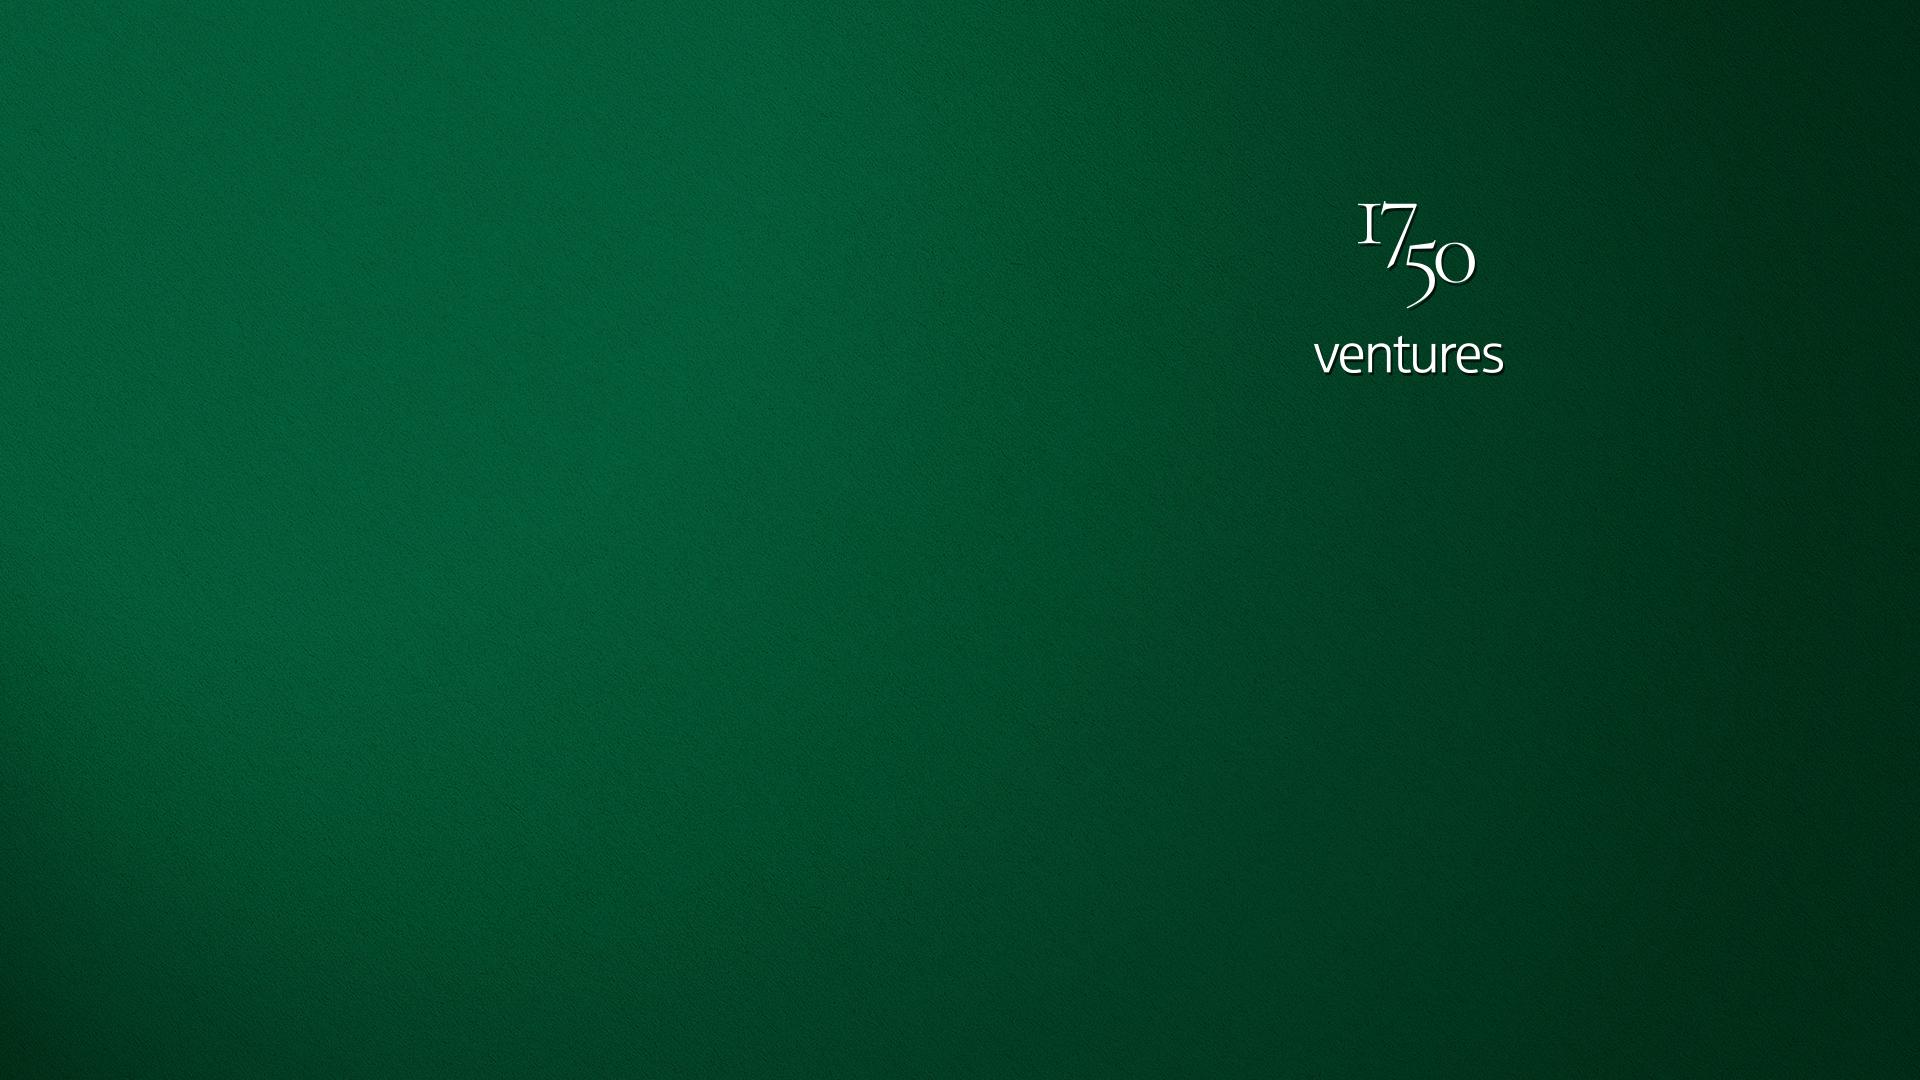 1750 Ventures / investor von Hannover / Background